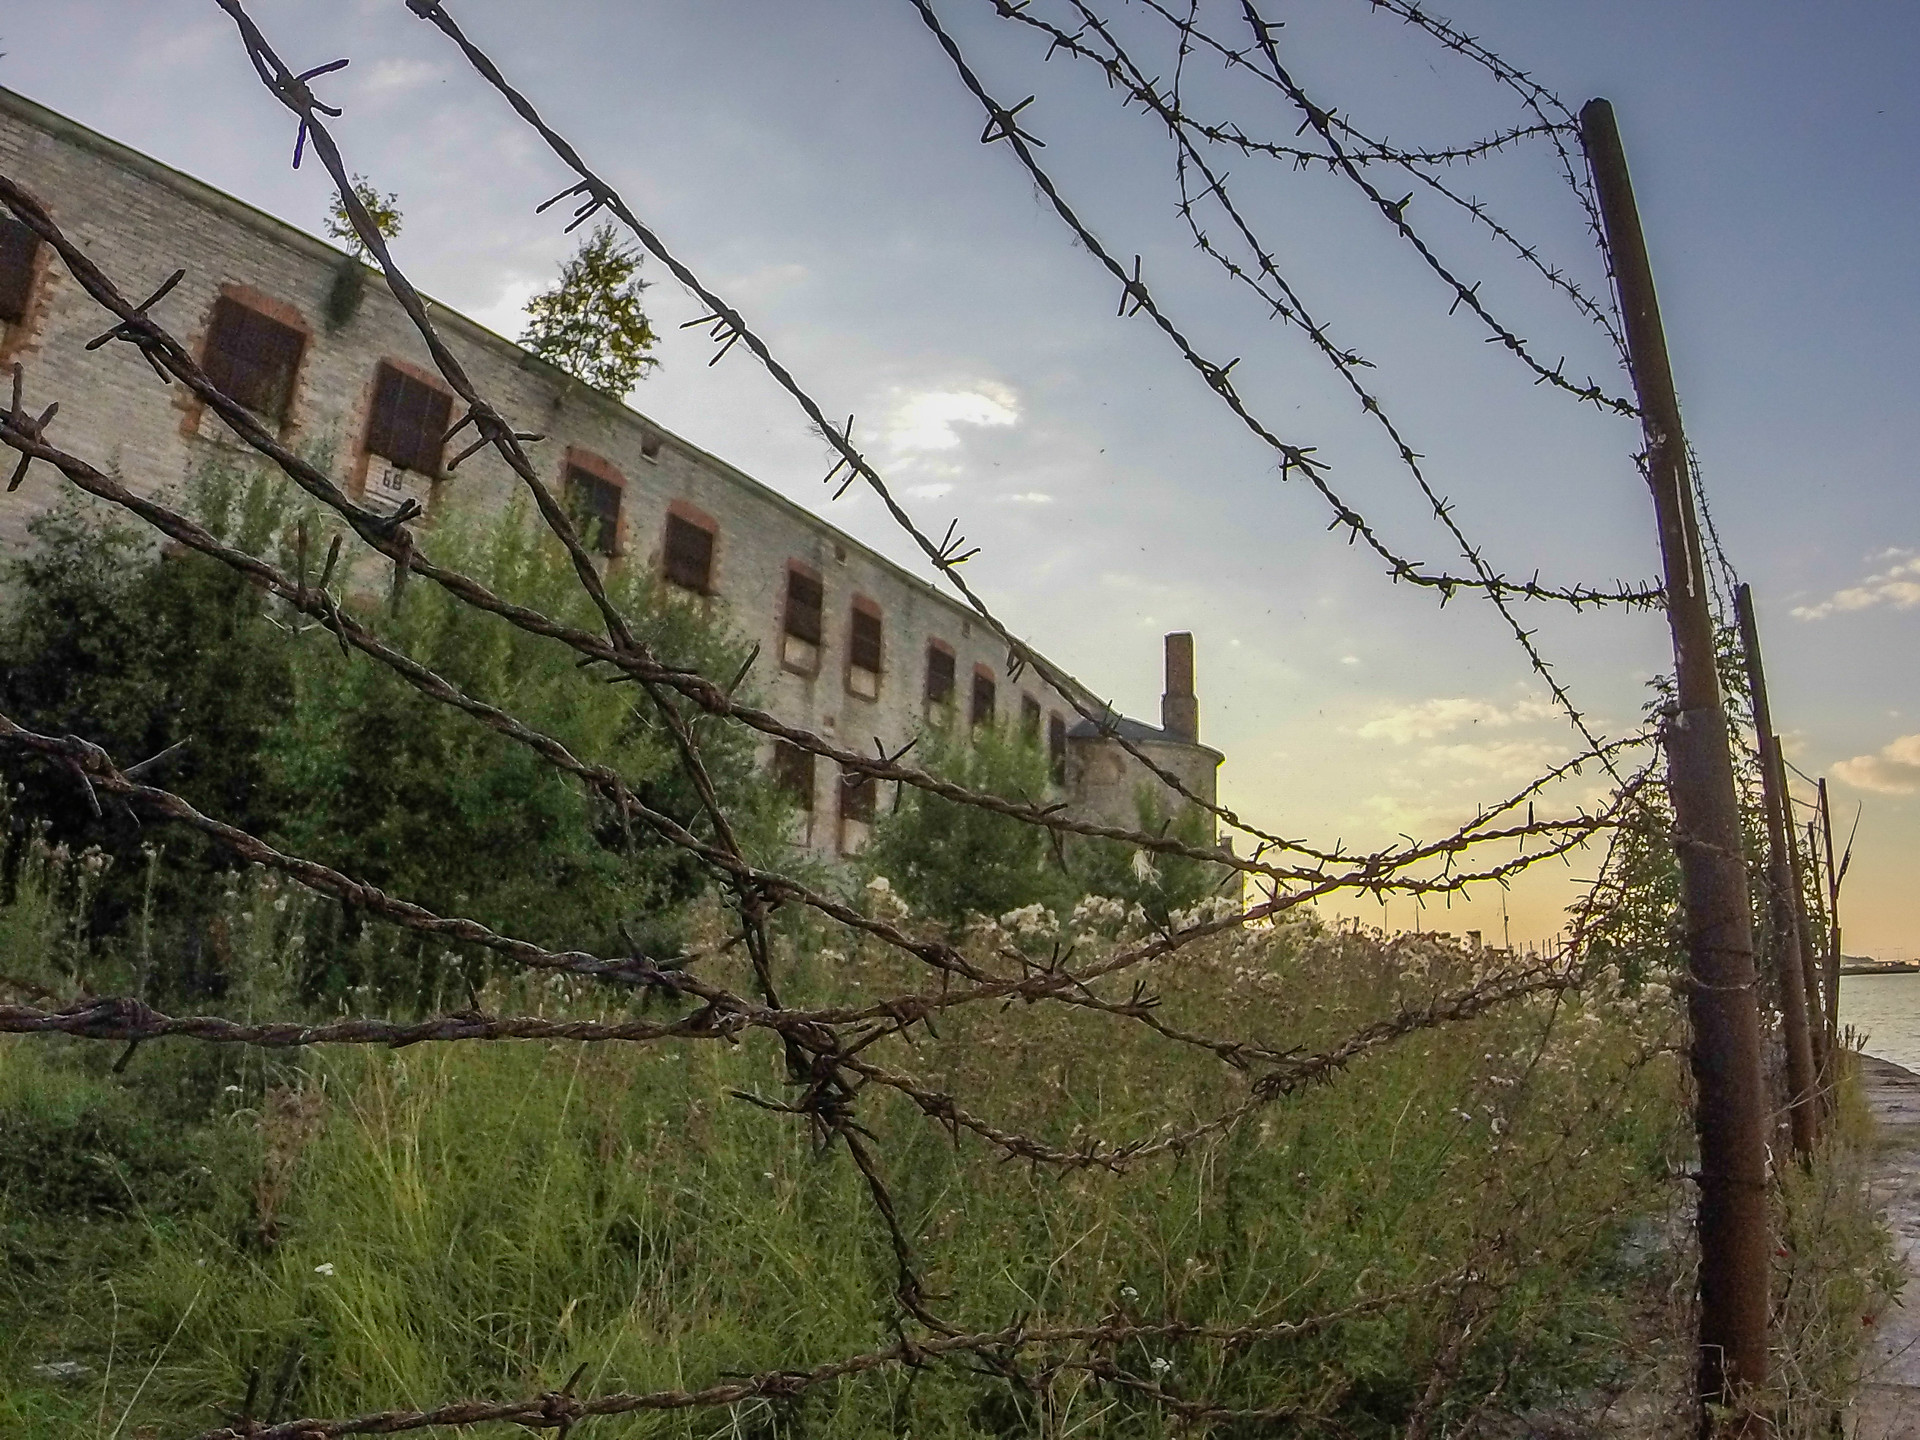 El tenebroso secreto de Tallin: la prisión de Patarei